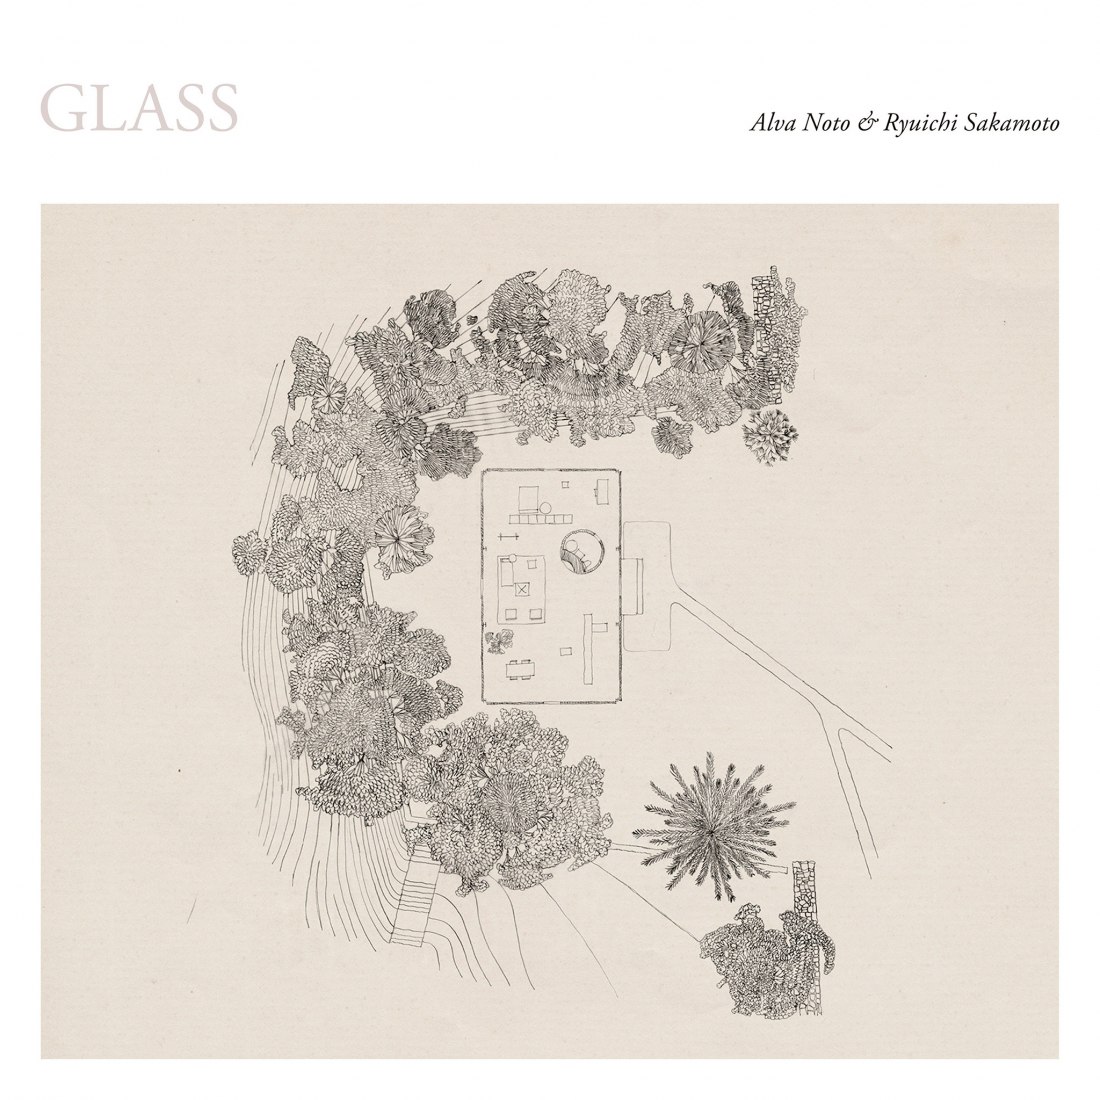 Glass by Alva Noto & Ryuichi Sakamoto